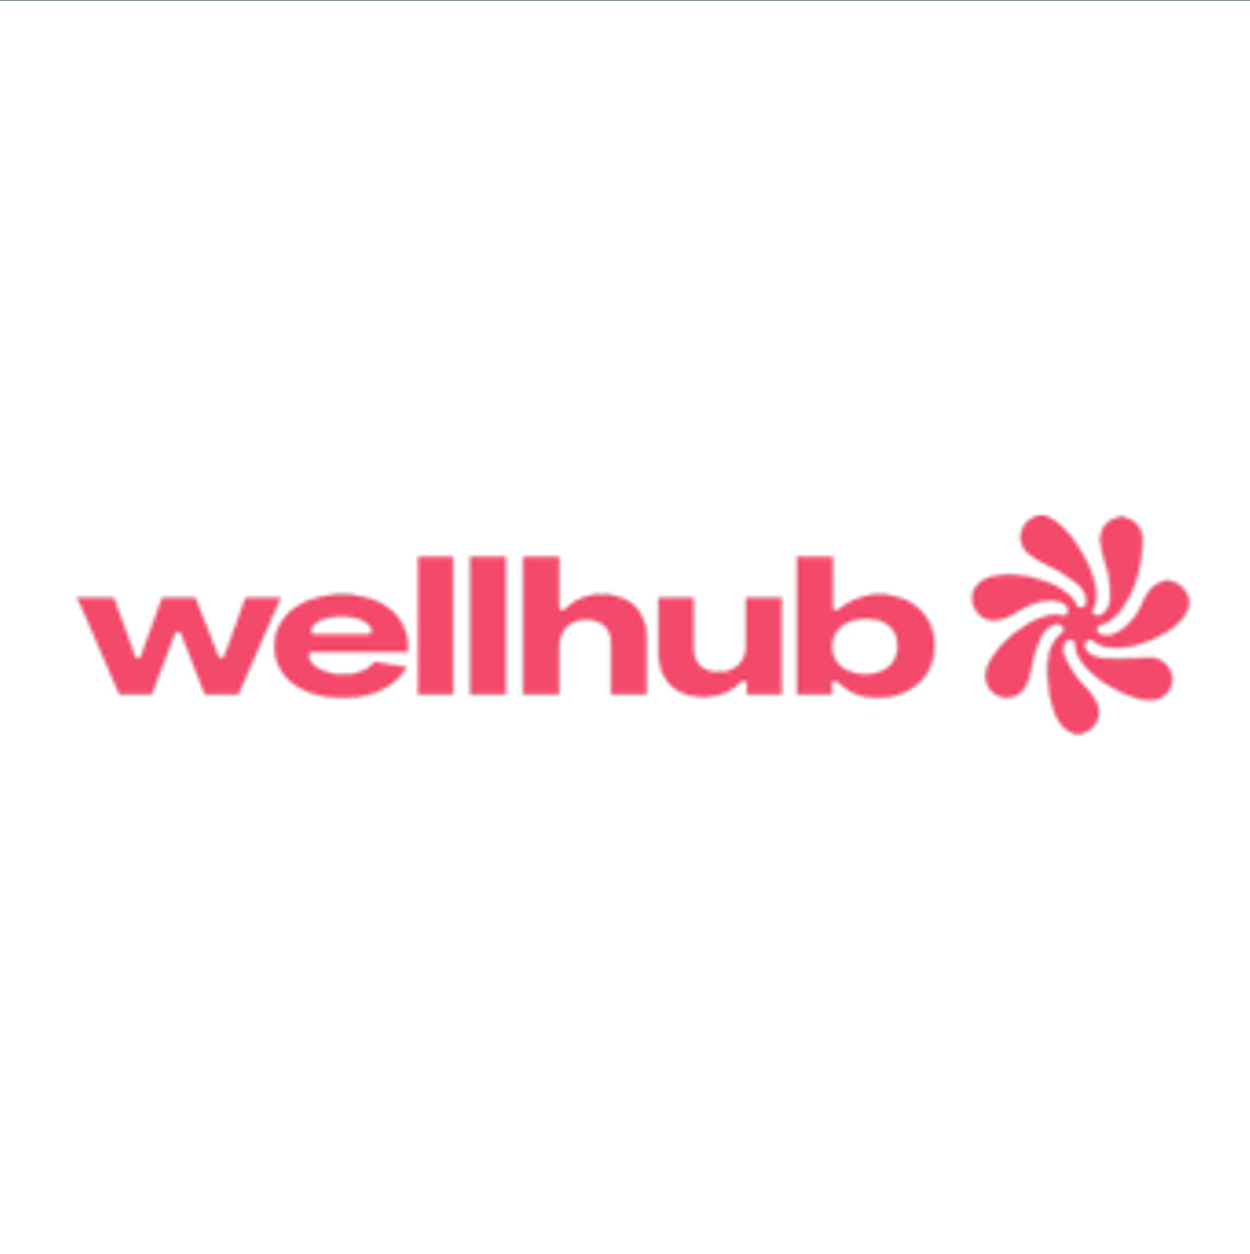 Wellhub – ehemals Gympass- bietet mit Laufcampus auch Laufangebote an (Lauftreffs, Joggen, Laufen)